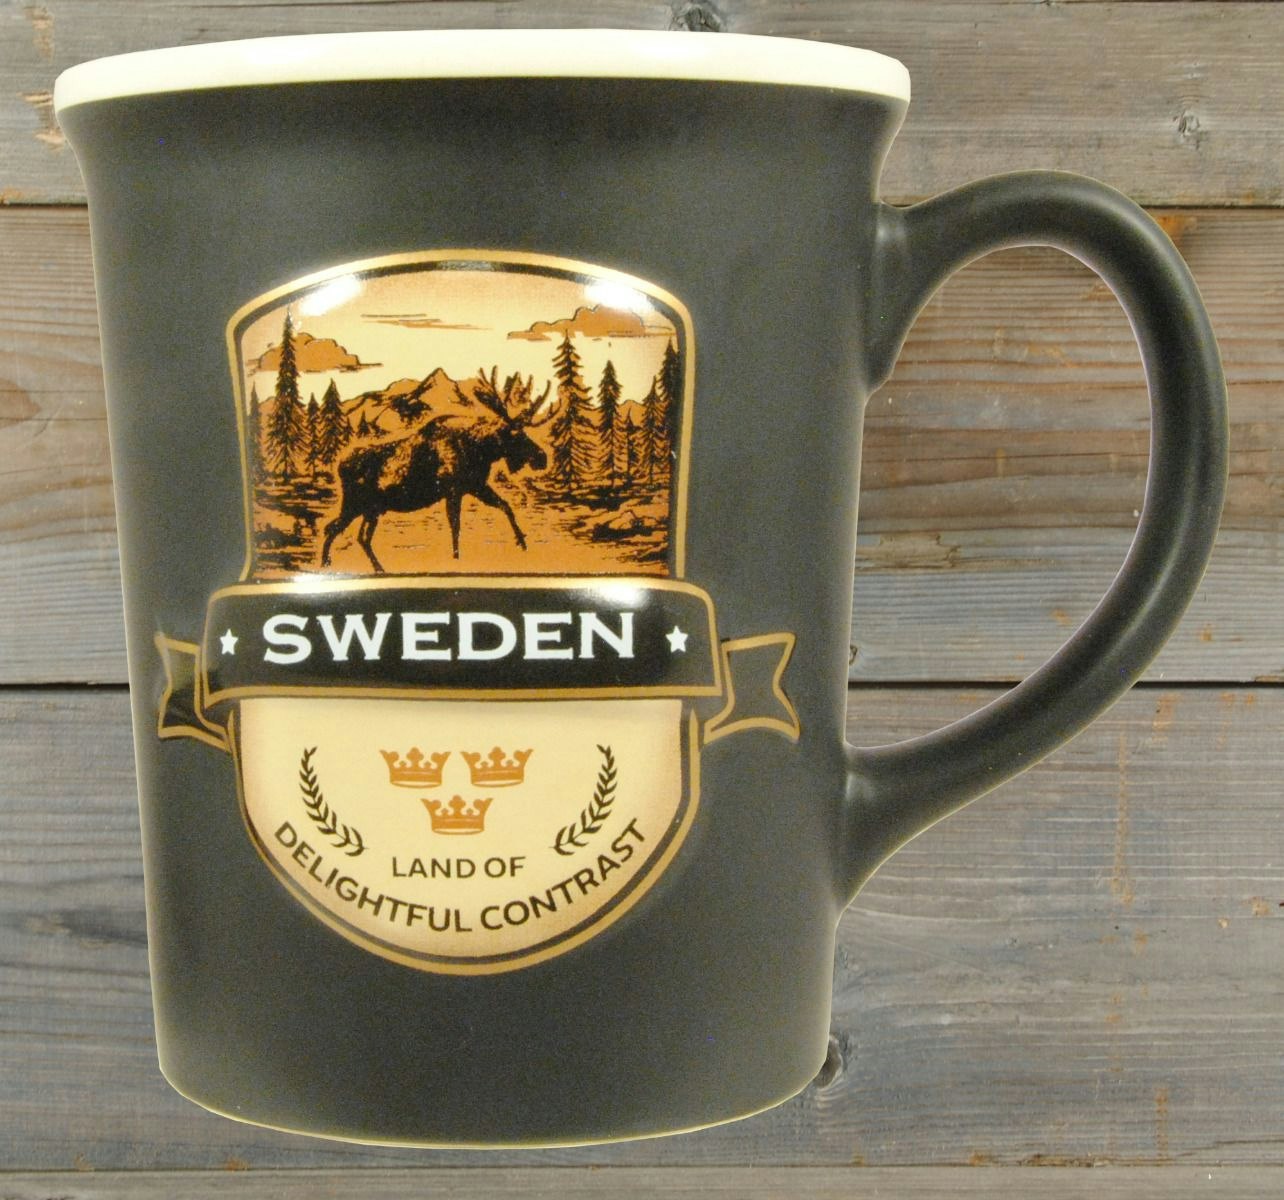 Mug Sweden Delightful Contrast